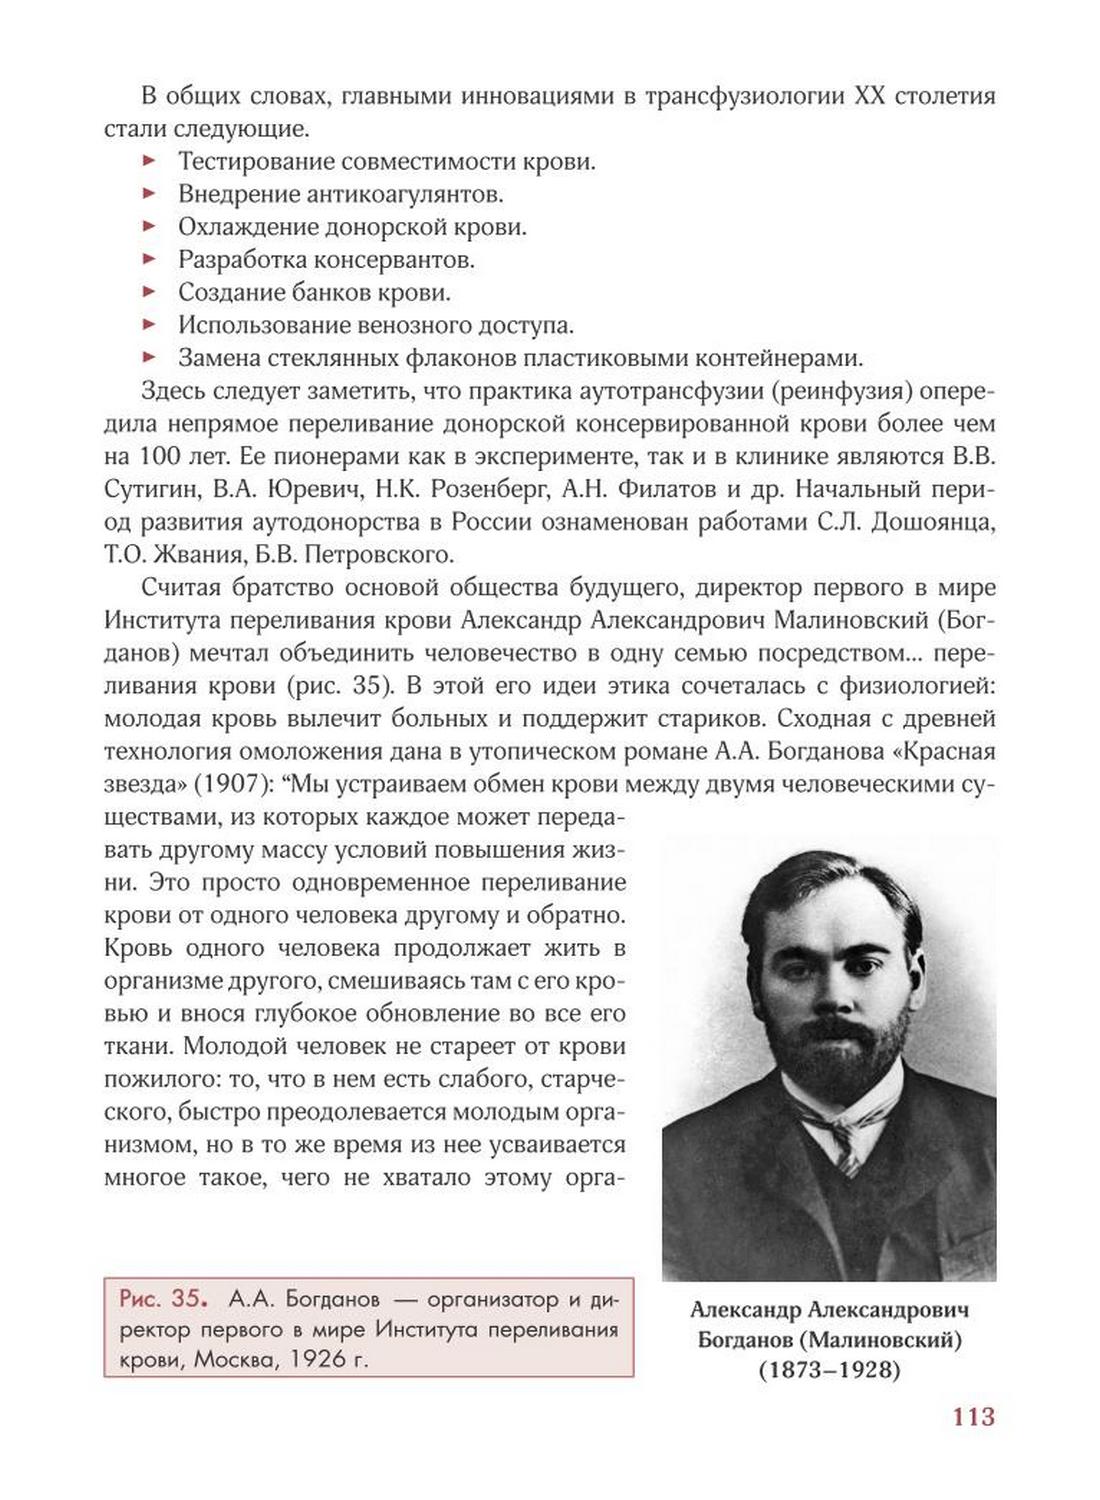 Рис. 35. А.А. Богданов — организатор и директор первого в мире Института переливания крови, Москва, 1926 г.